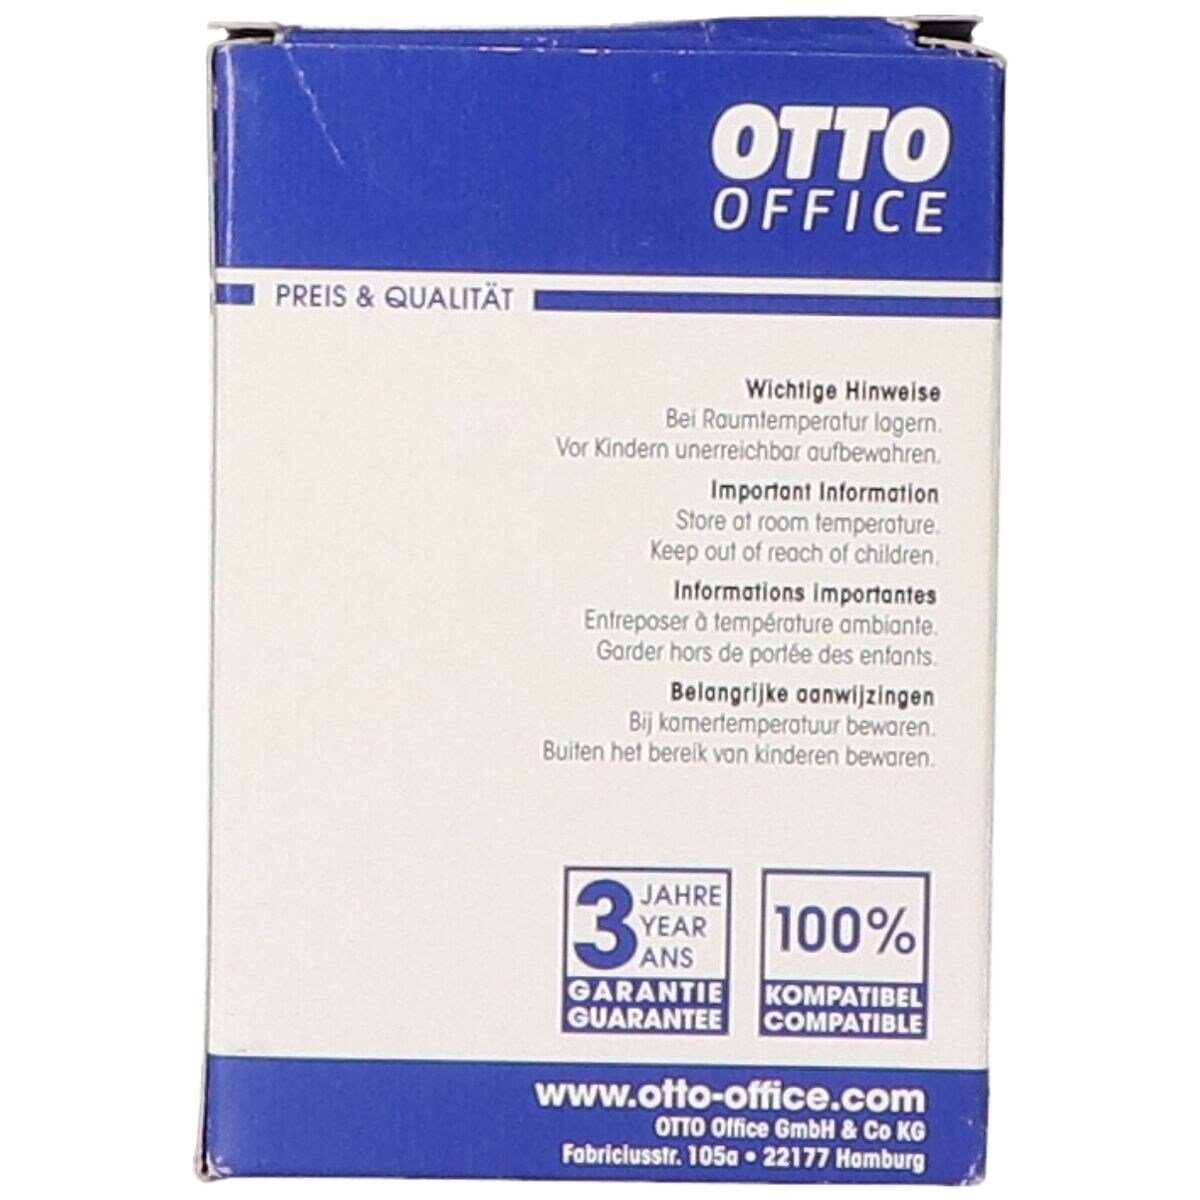 Otto Office (1-tlg., »LC985BK«, Brother ersetzt Tintenpatrone schwarz) Office